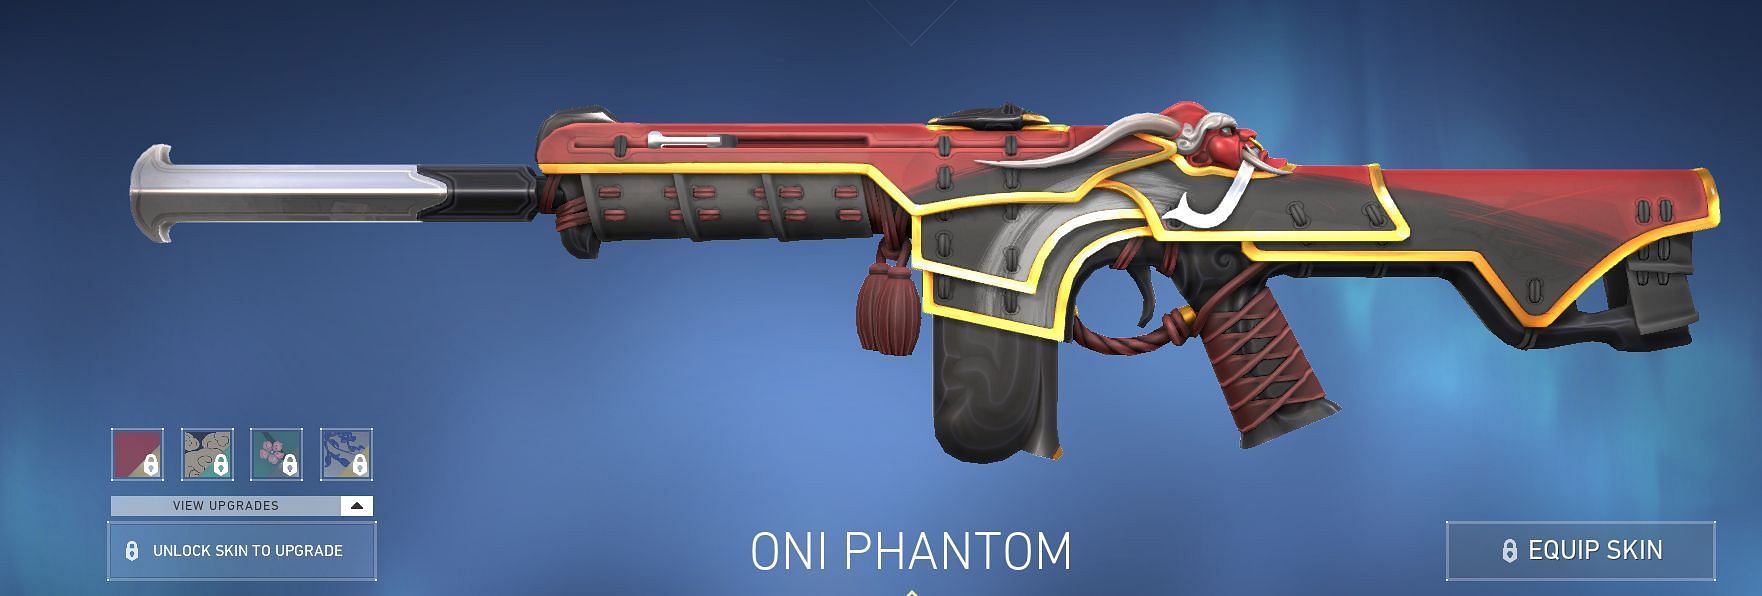 Oni Phantom (Image via Riot Games)